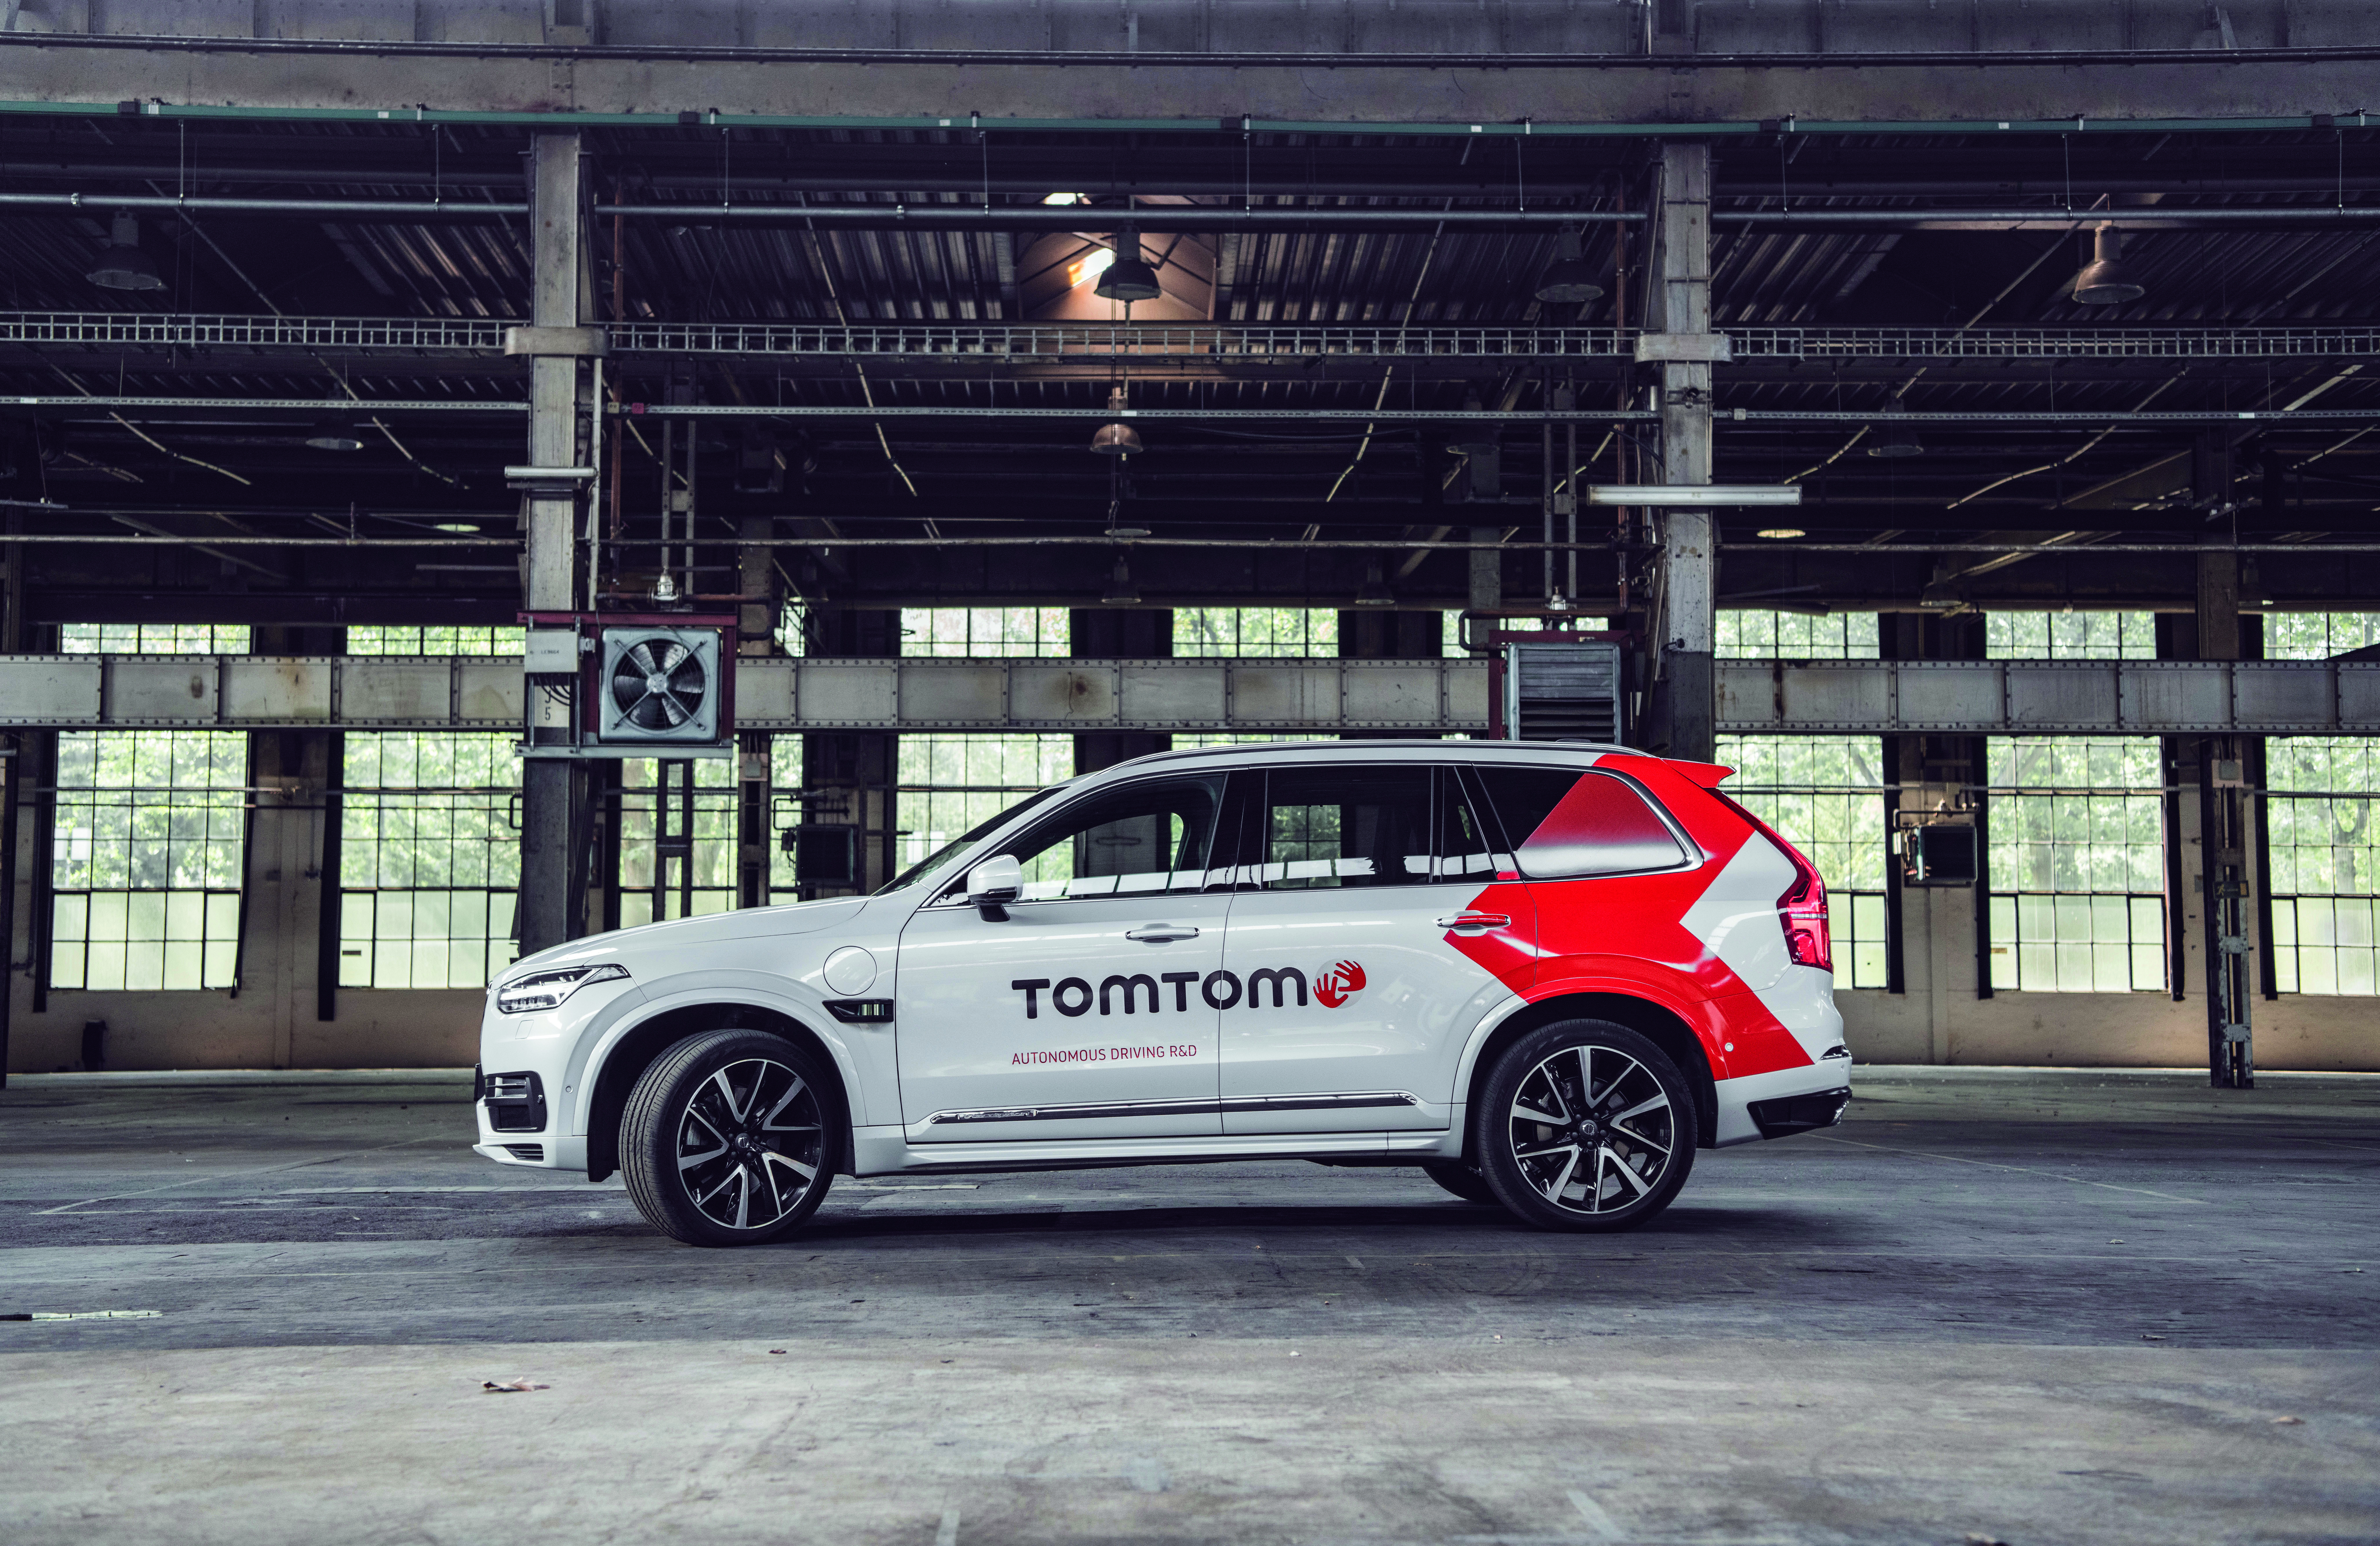 TomTom Launches Autonomous Test Vehicle